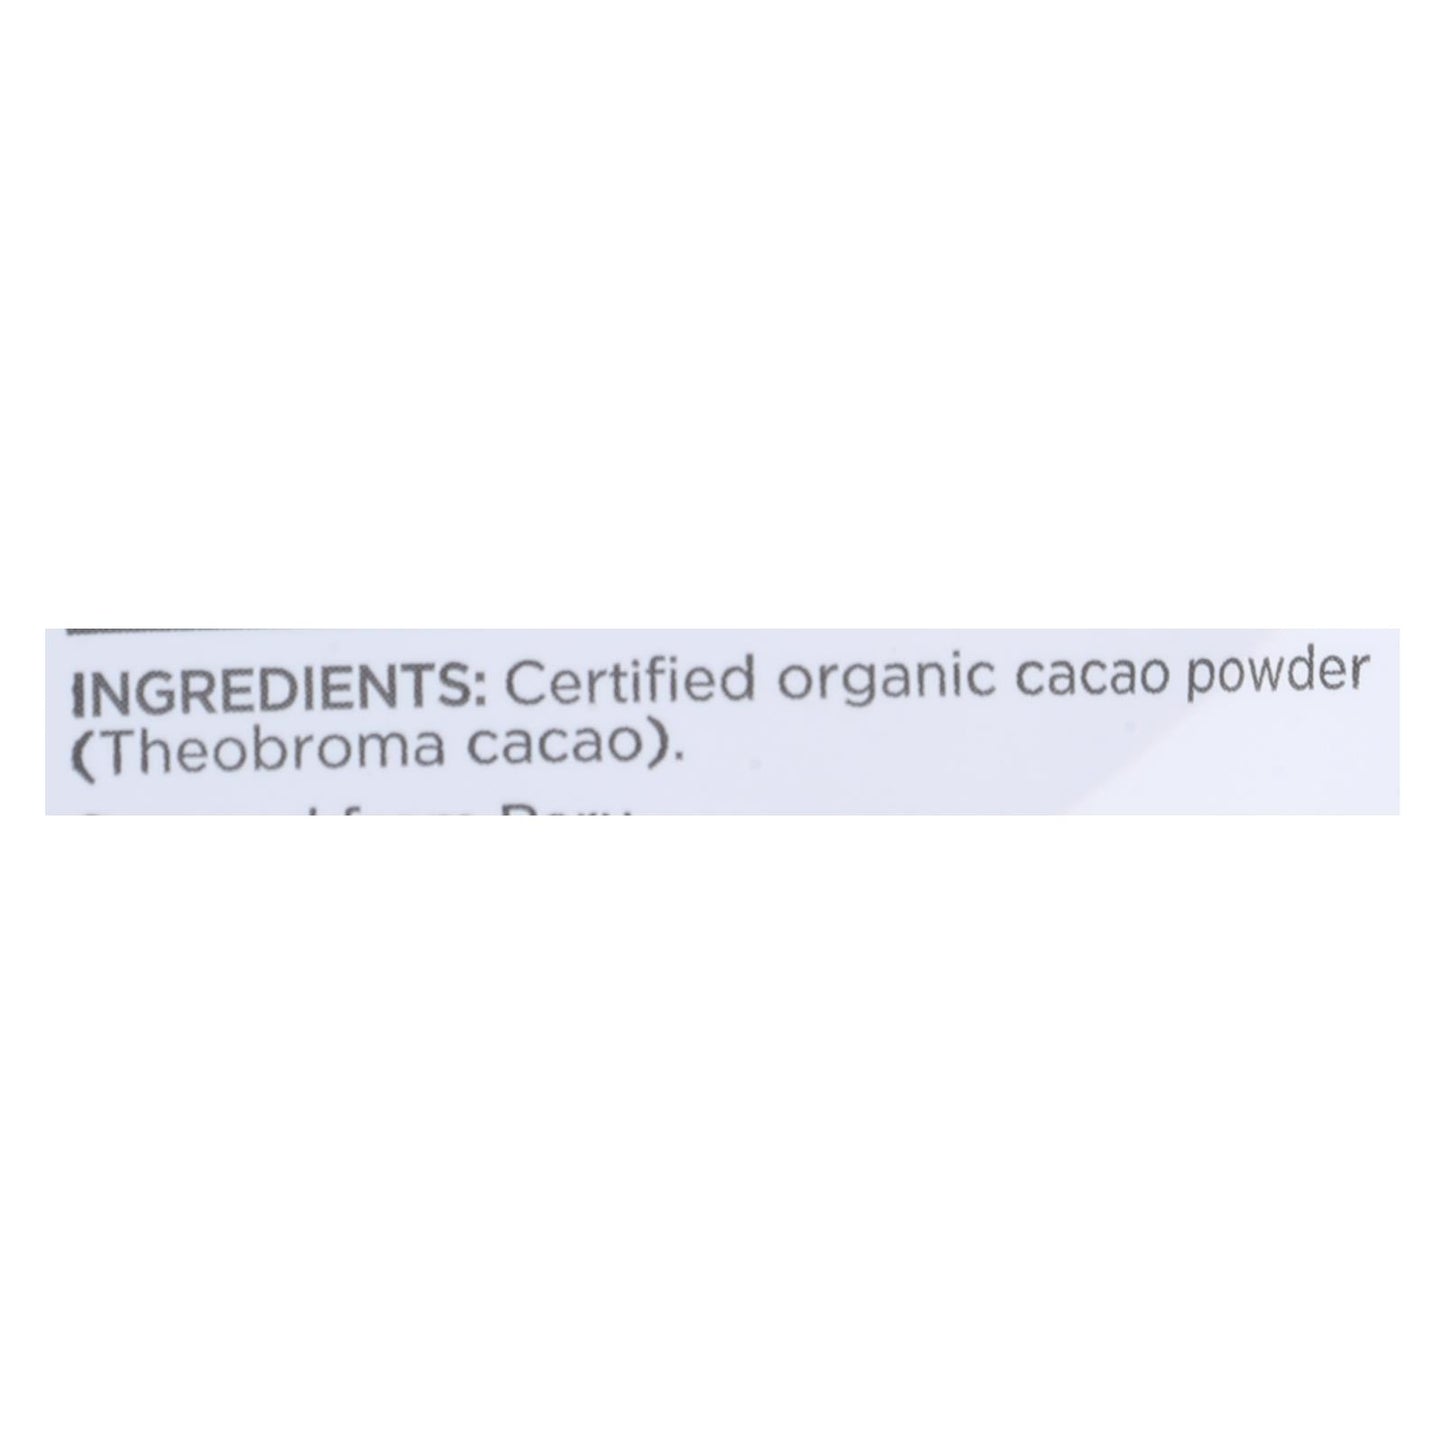 Navitas Organics - Cacao Powderketo - Case Of 6-8 Oz